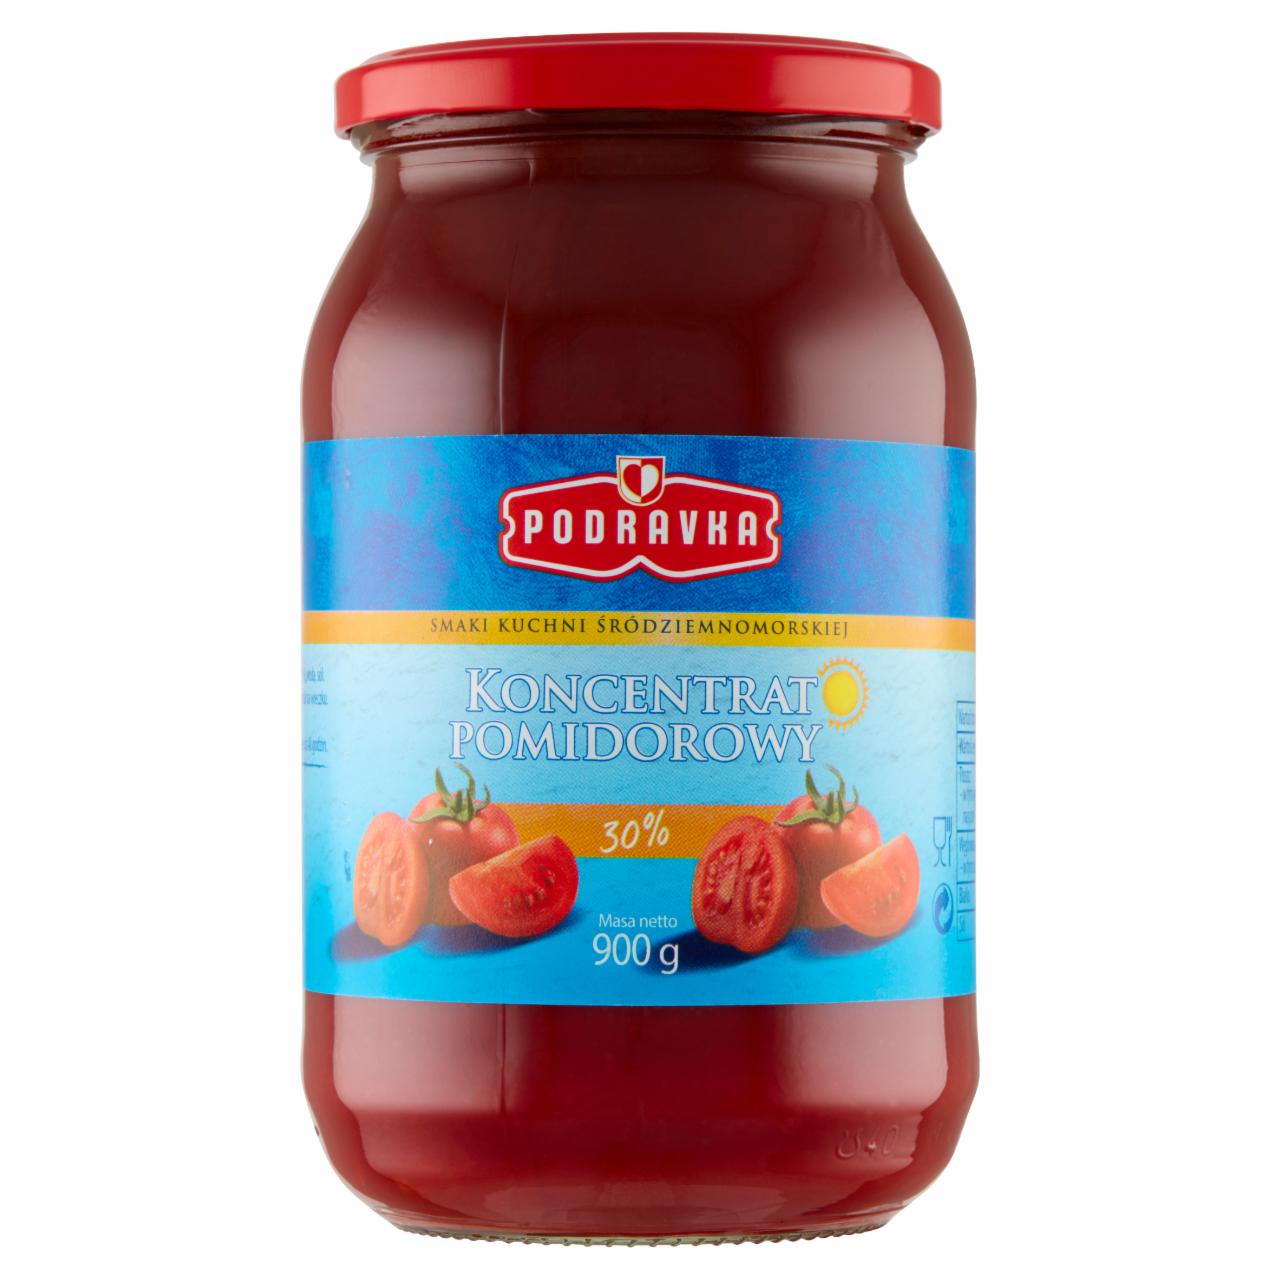 Zdjęcia - Podravka Koncentrat pomidorowy 30% 900 g